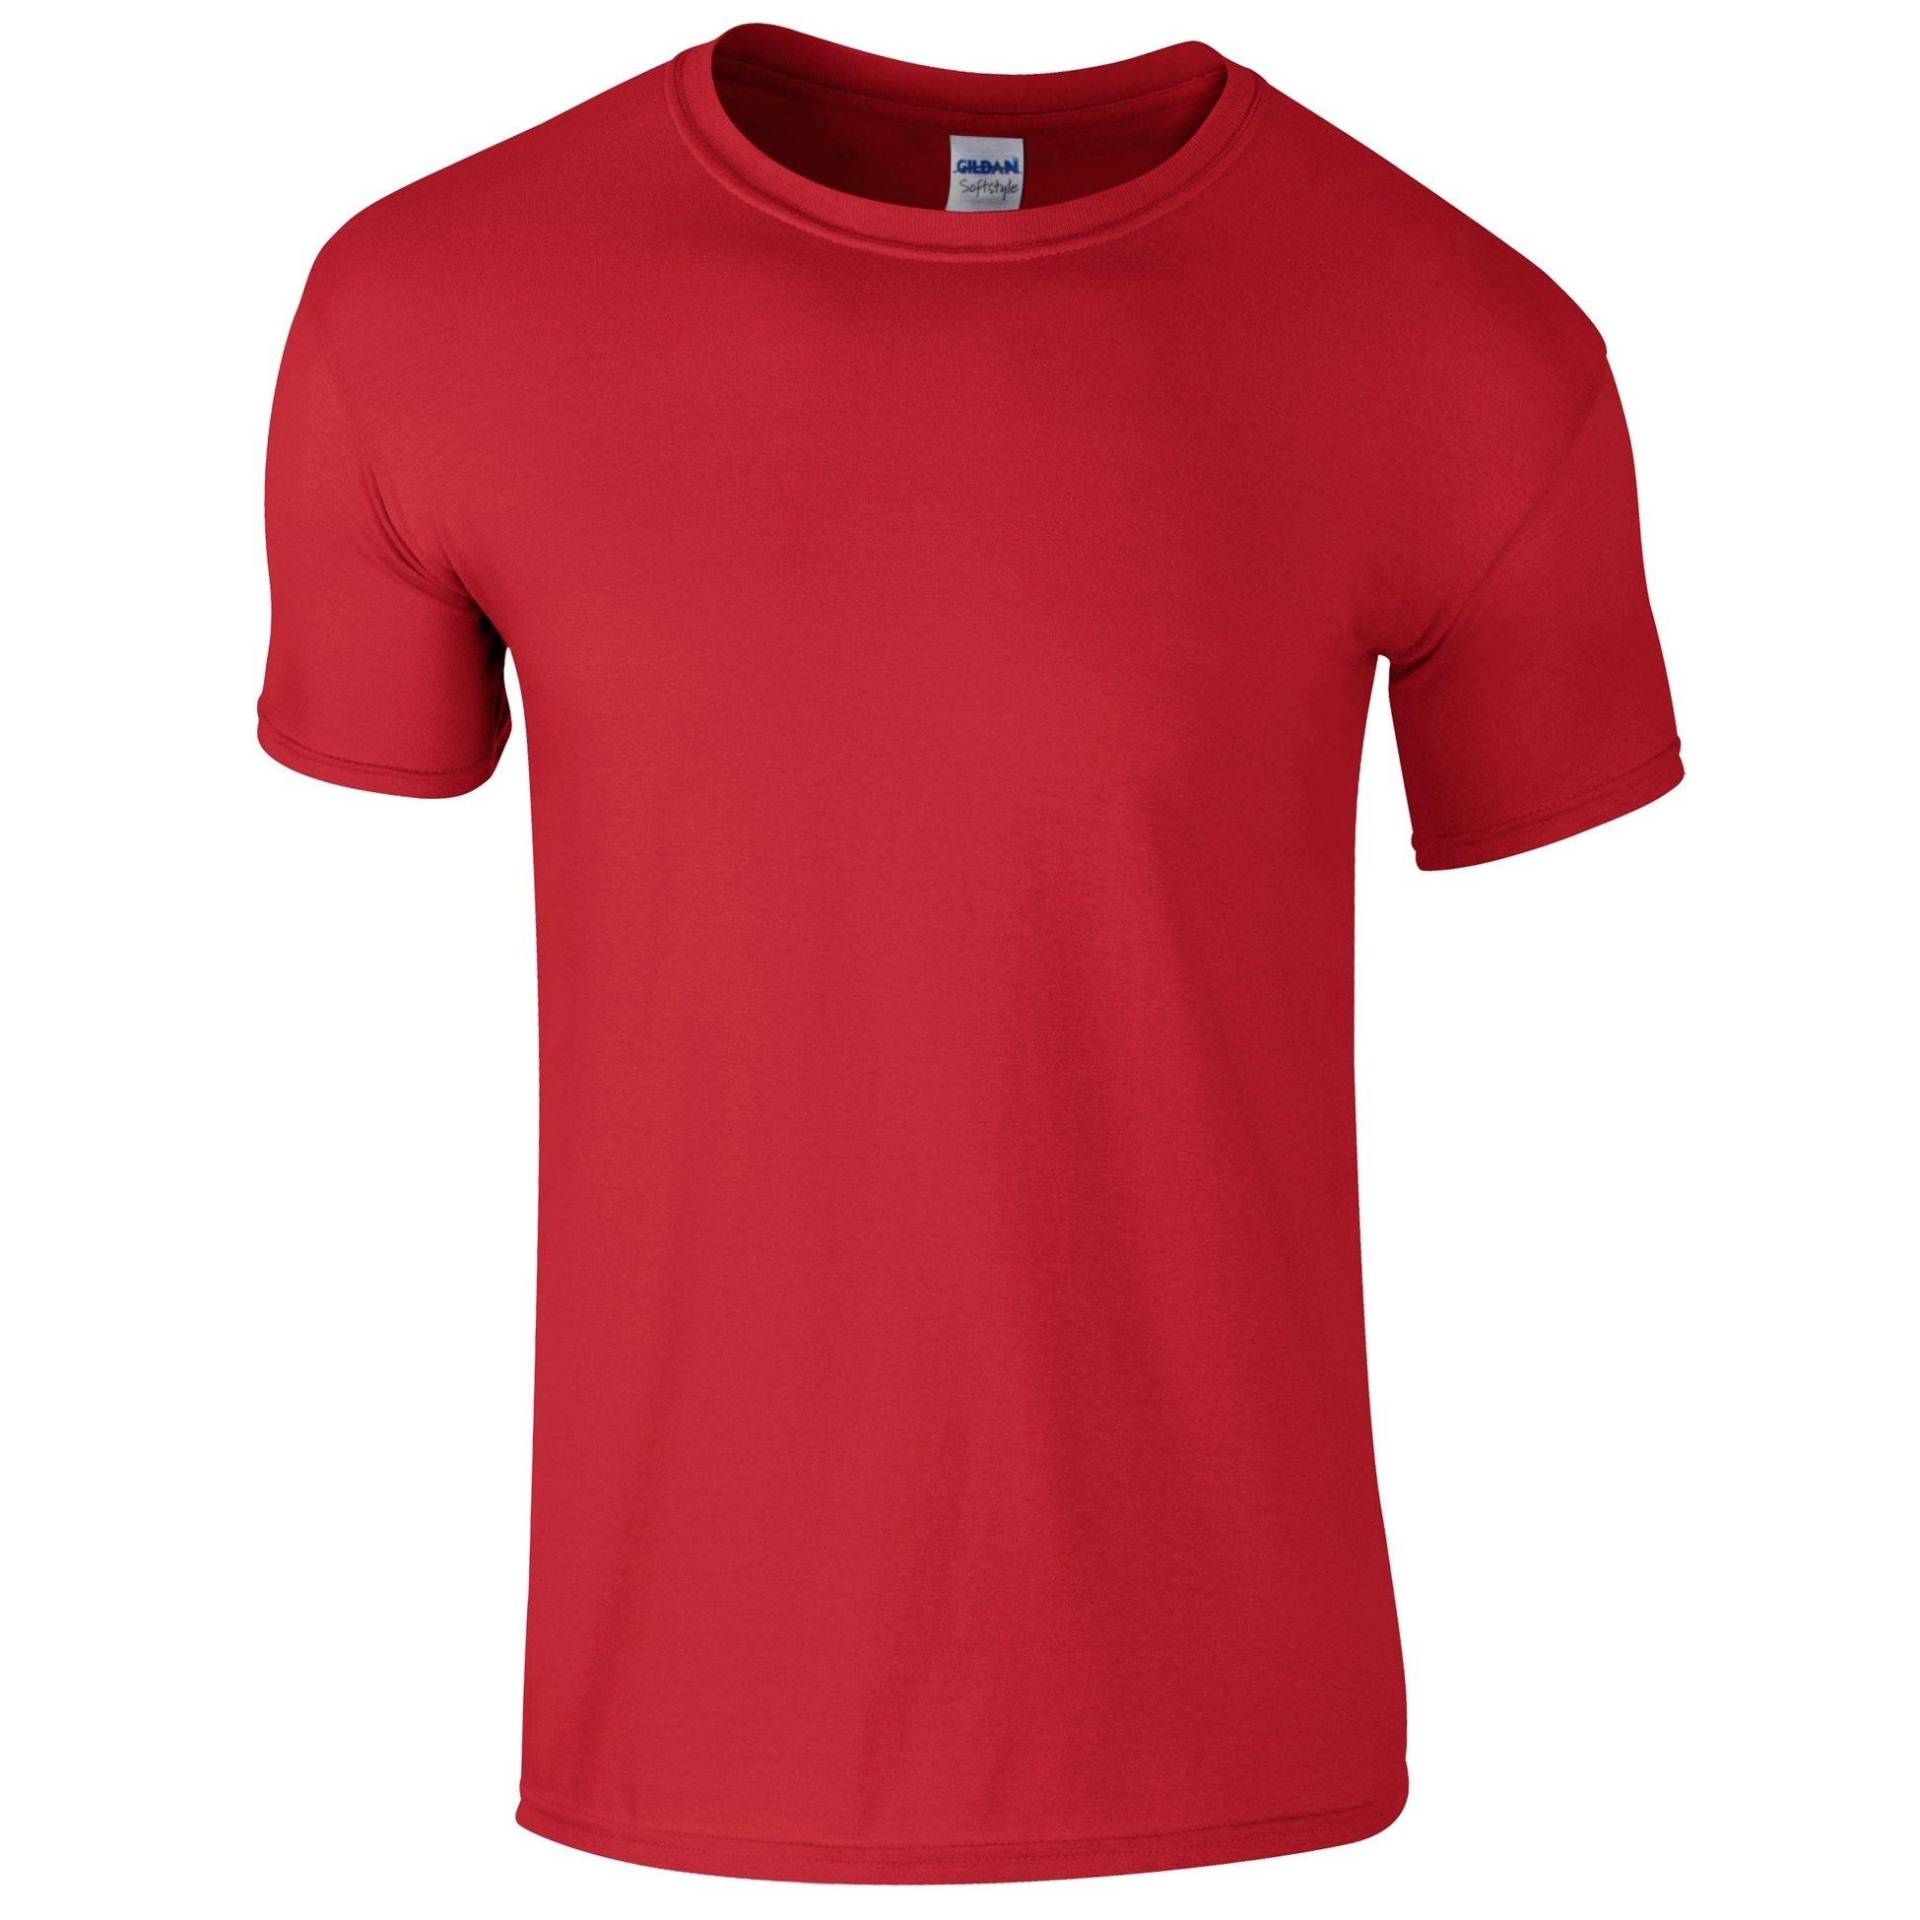 Softstyle Tshirt, Kurzarm, Rundhalsausschnitt Herren Rot Bunt XL von Gildan